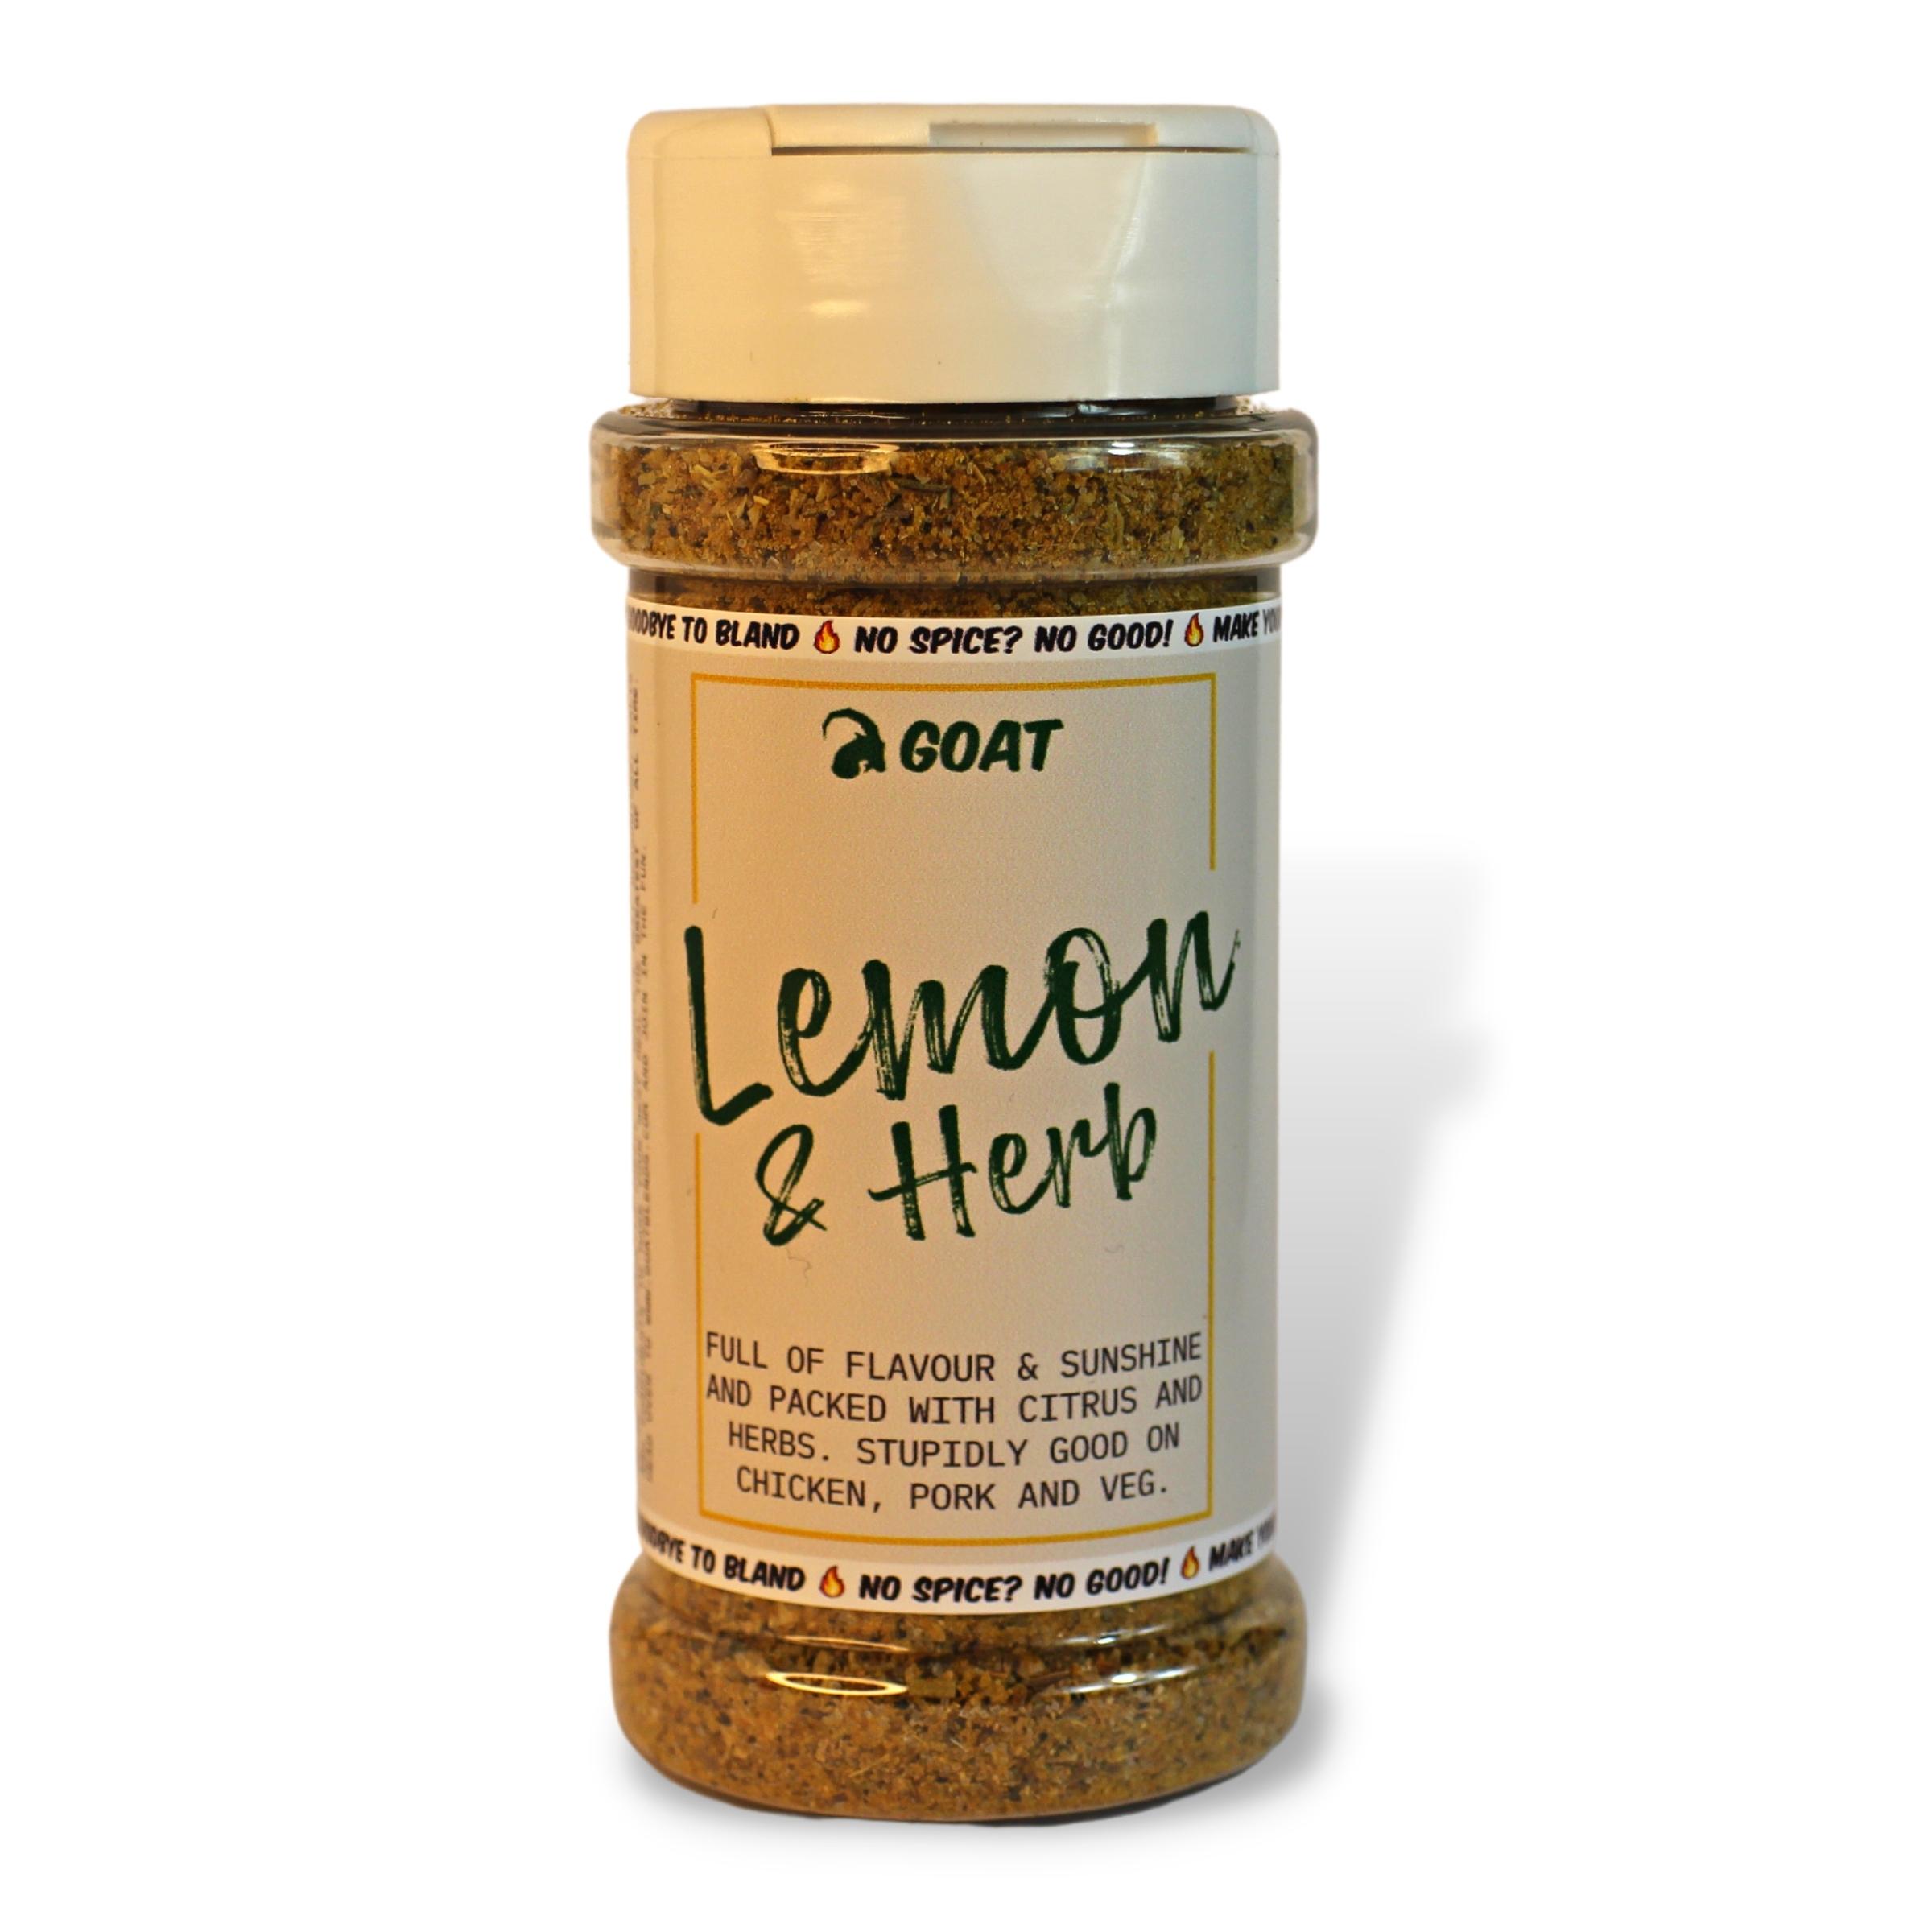 Lemon & Herb Seasoning Blend 75g – The GOAT Seasoning Blends